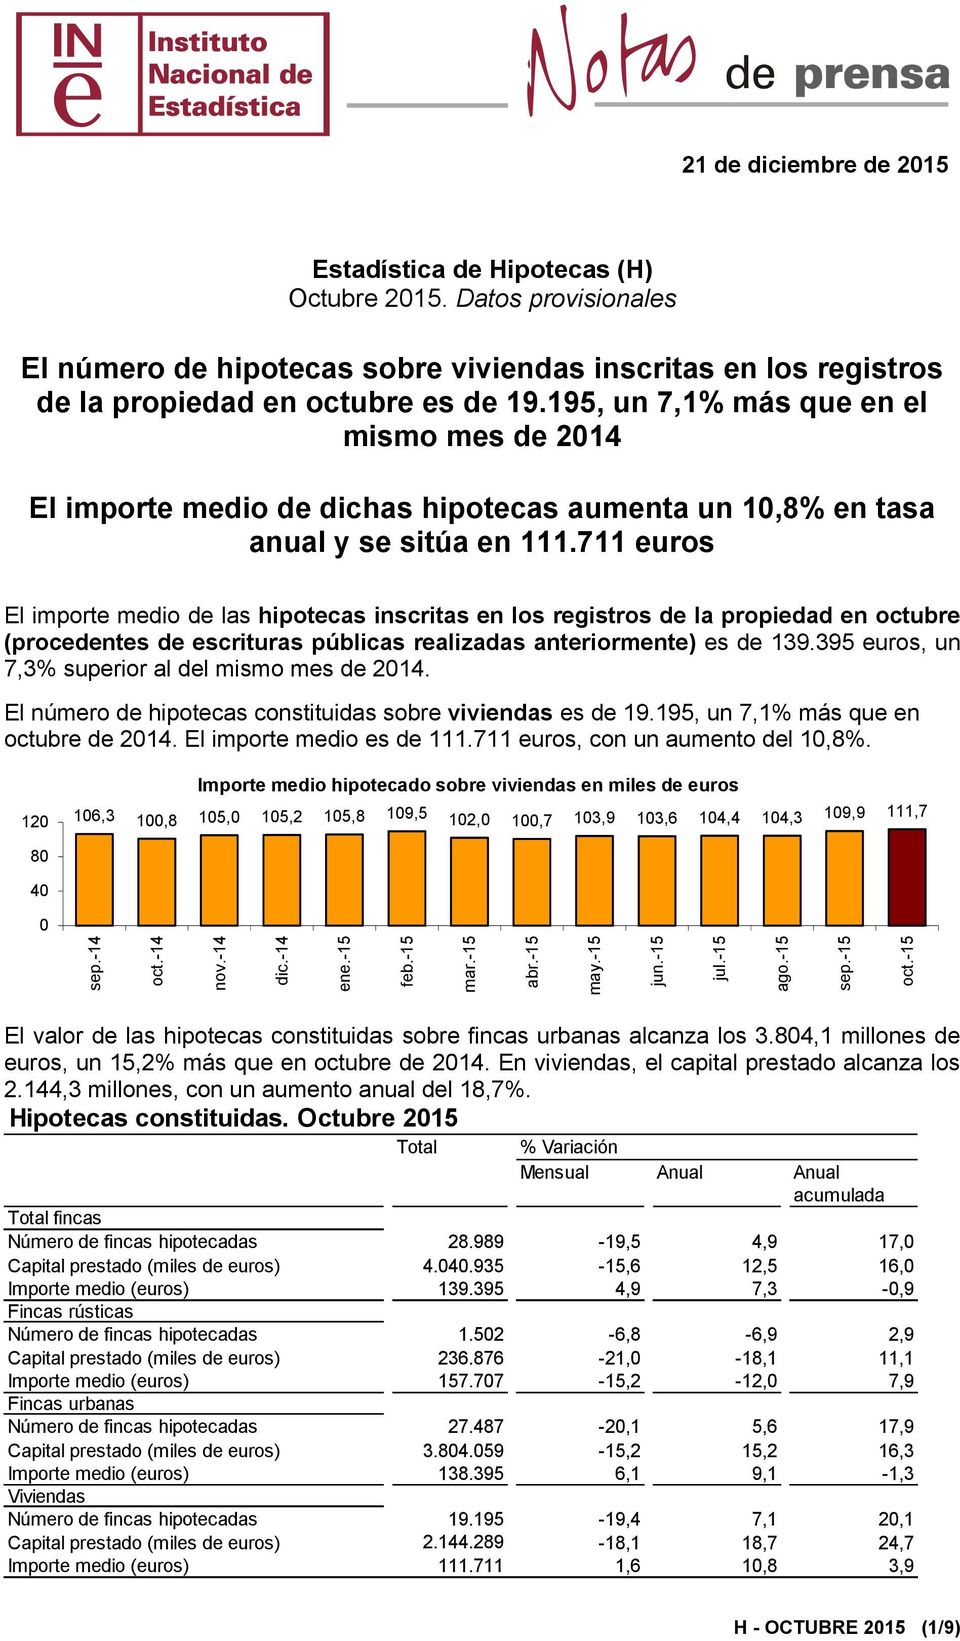 711 euros El importe medio de las hipotecas inscritas en los registros de la propiedad en octubre (procedentes de escrituras públicas realizadas anteriormente) es de 139.